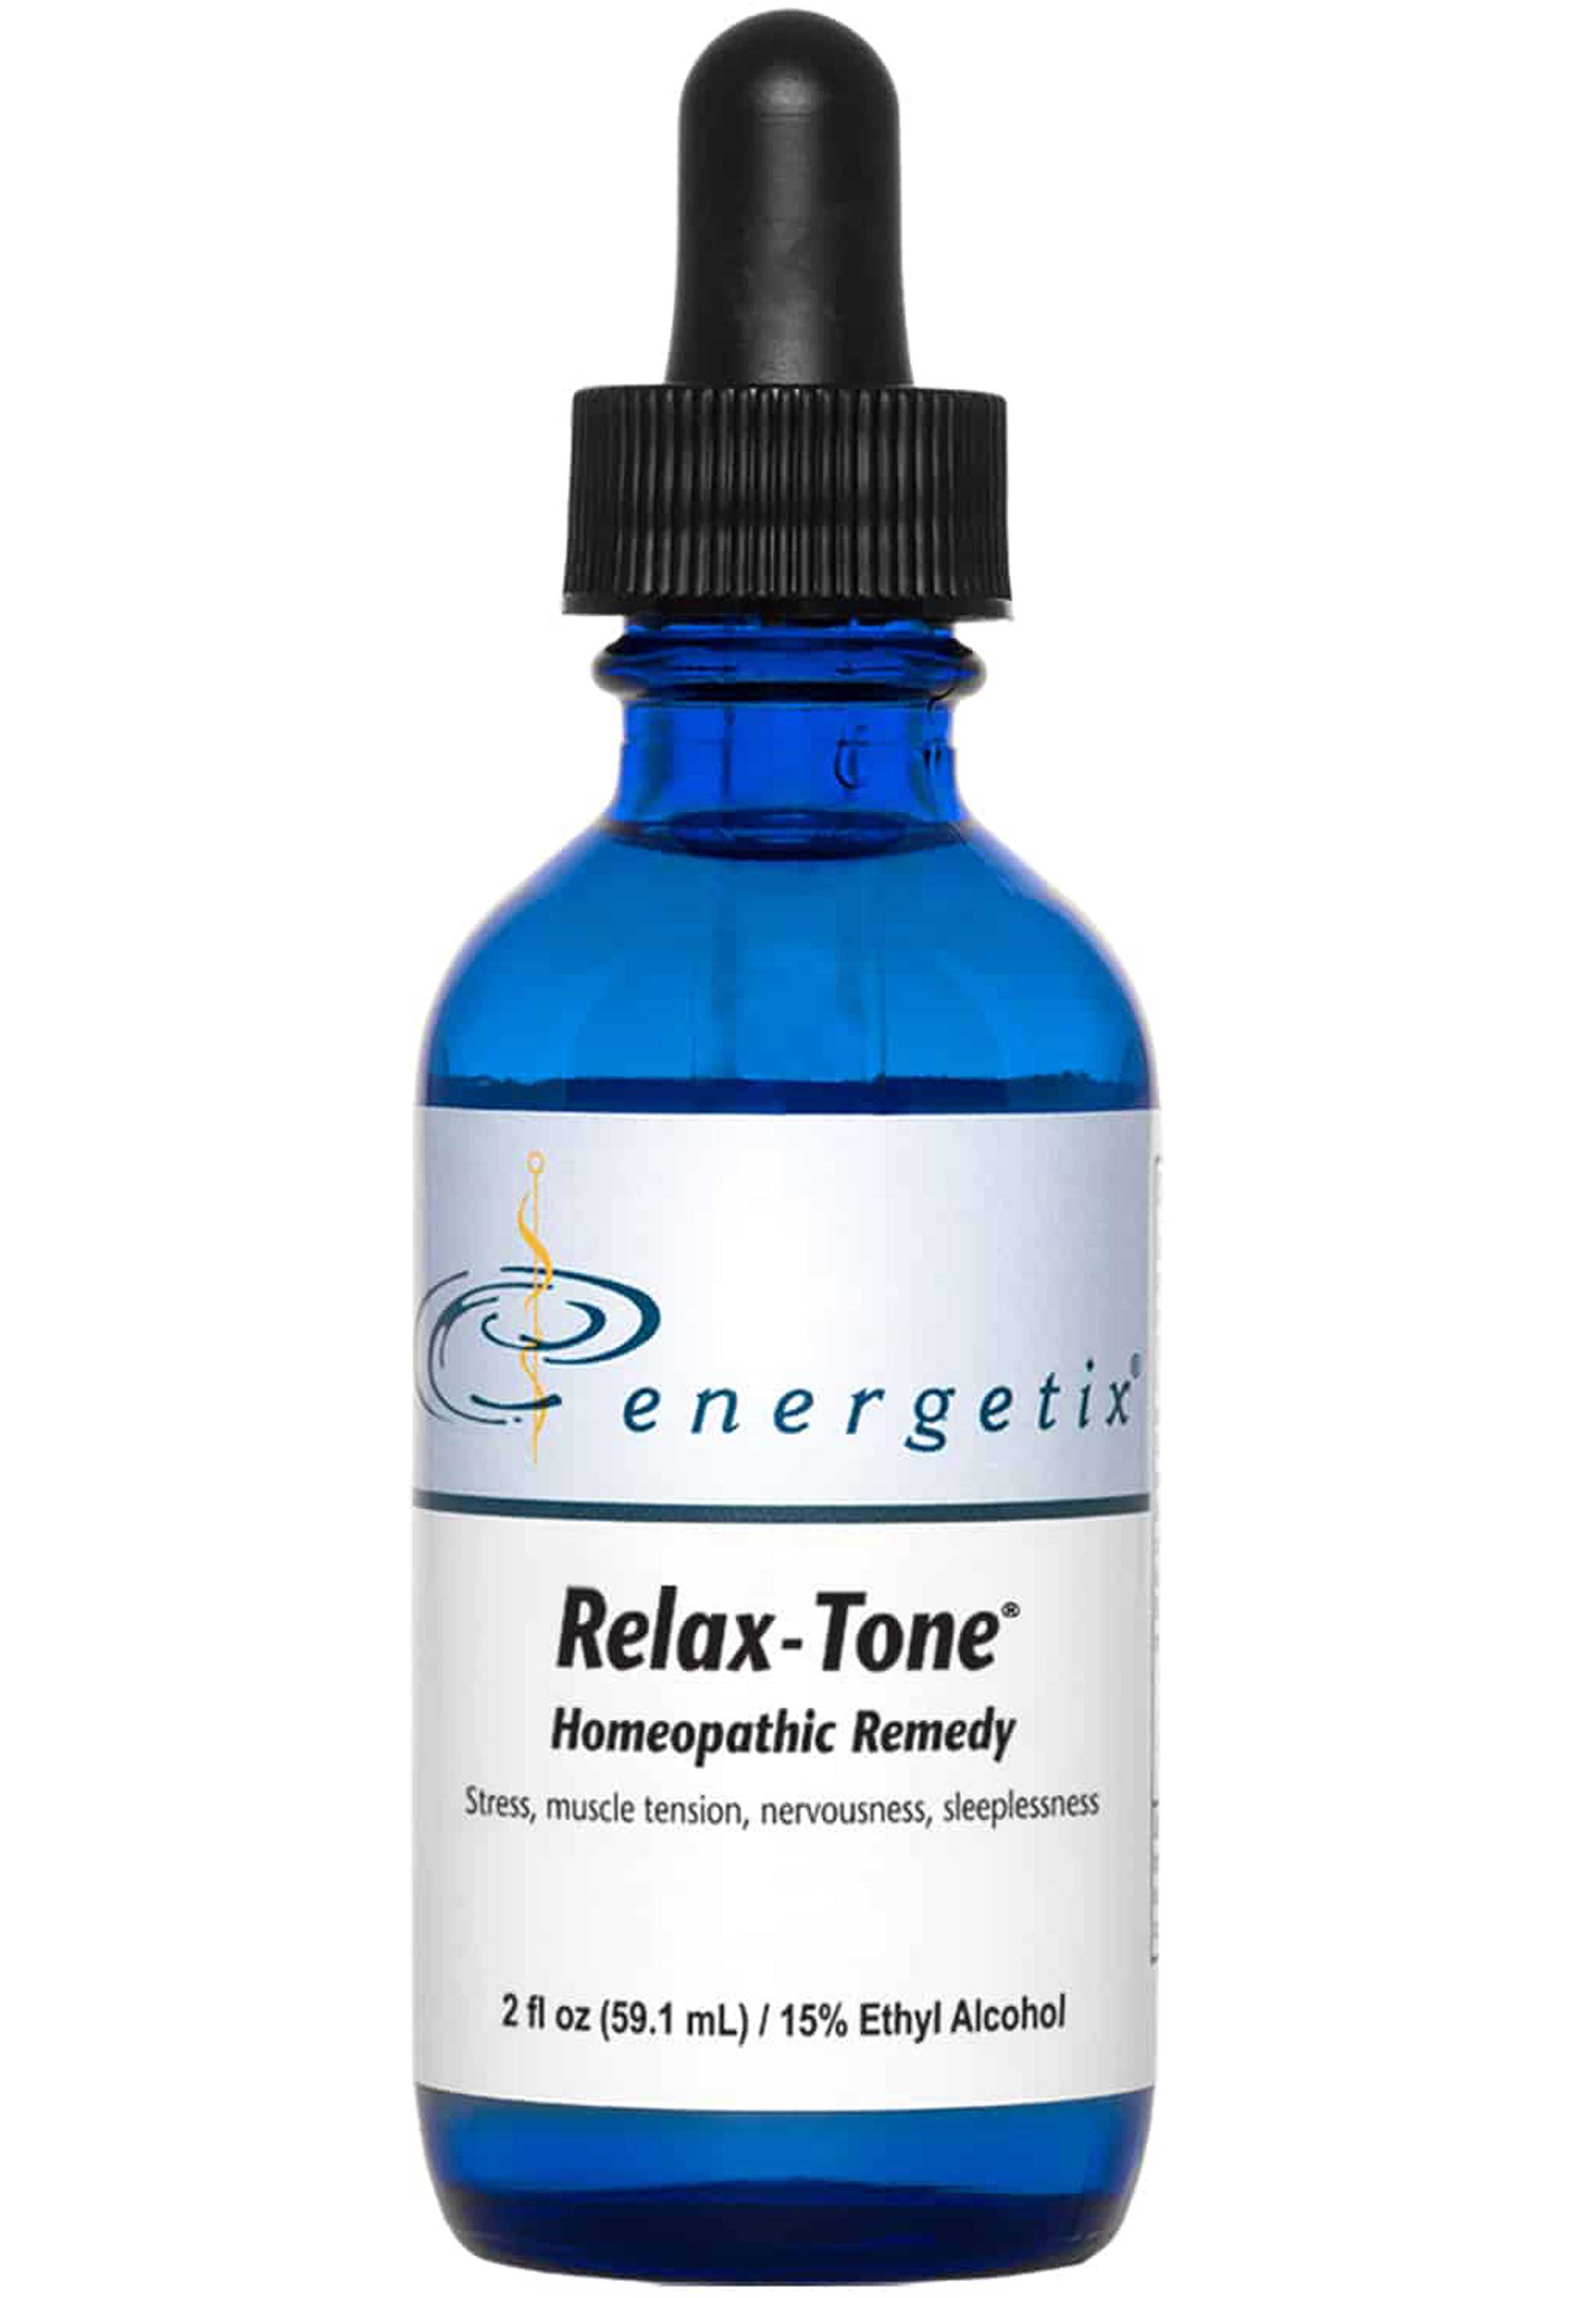 Energetix Relax-Tone